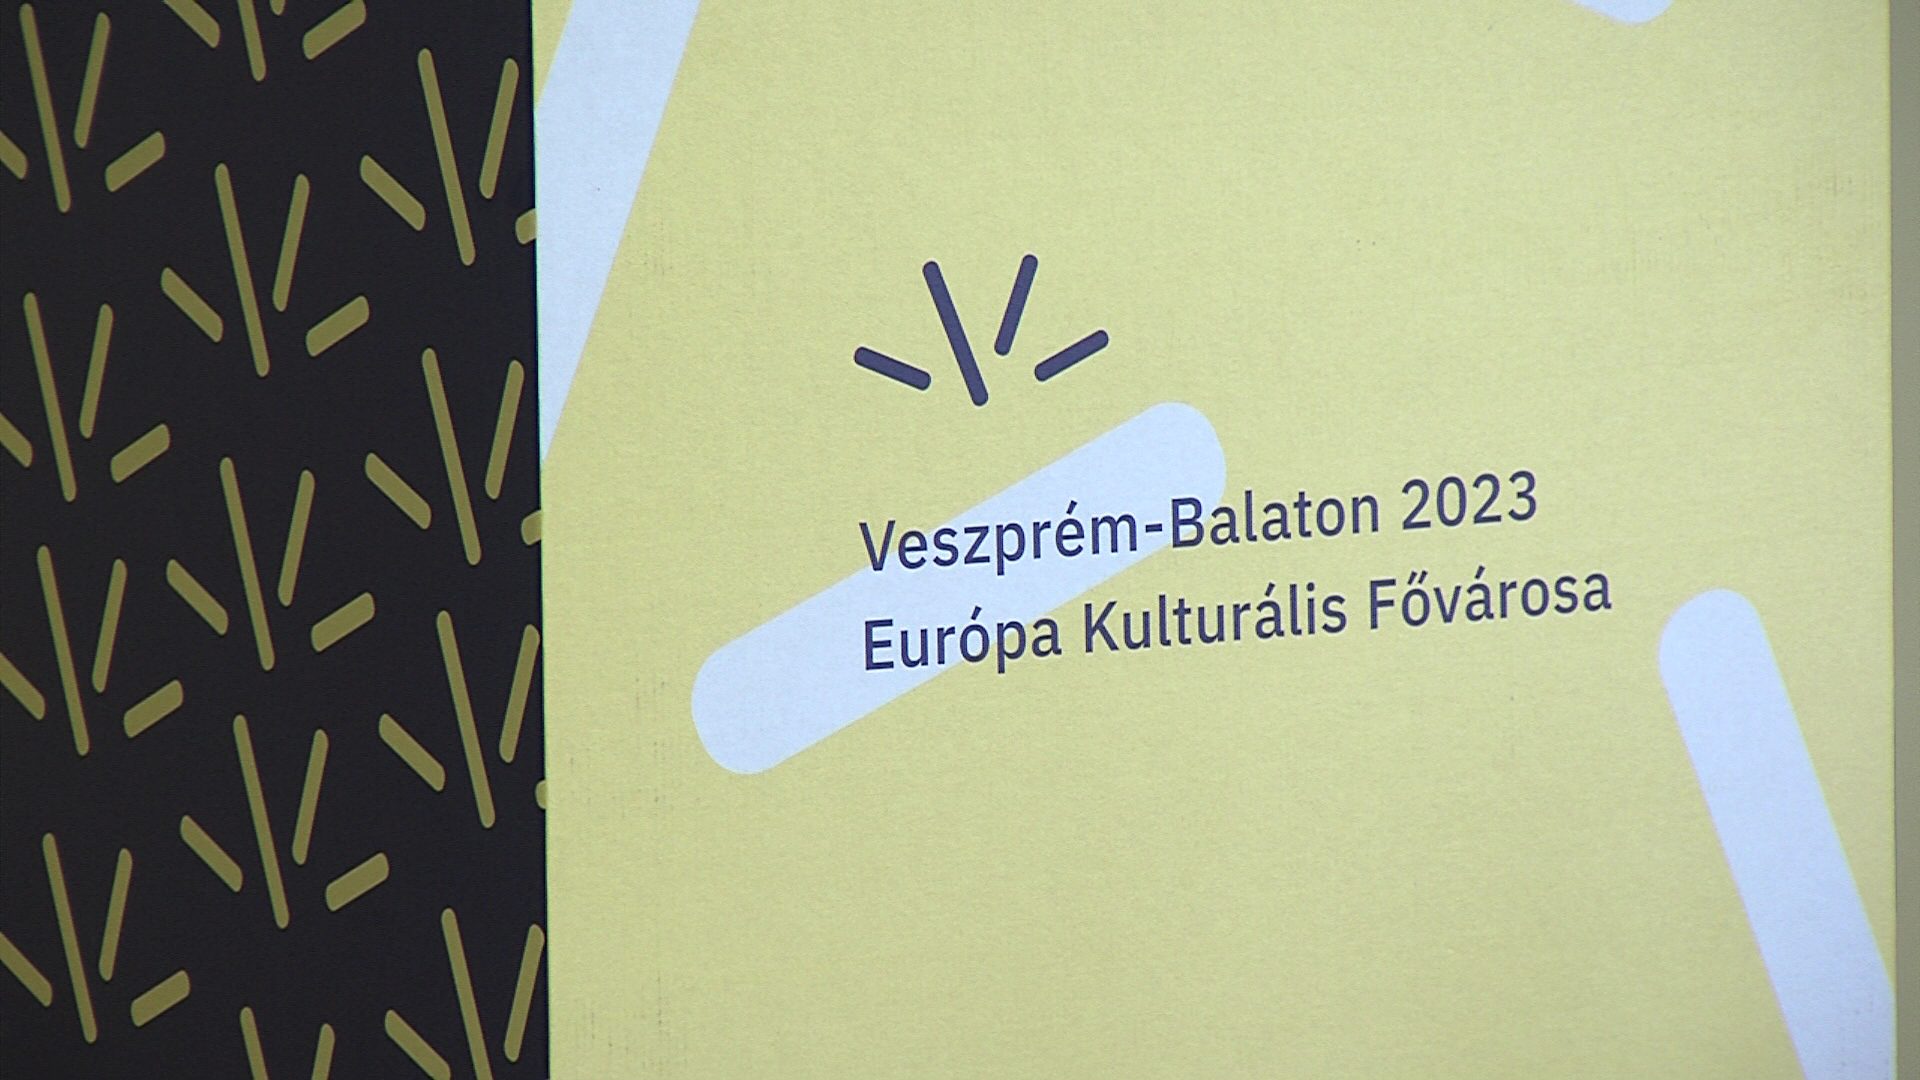 Új vezető a Veszprém-Balaton 2023 Zrt.-nél